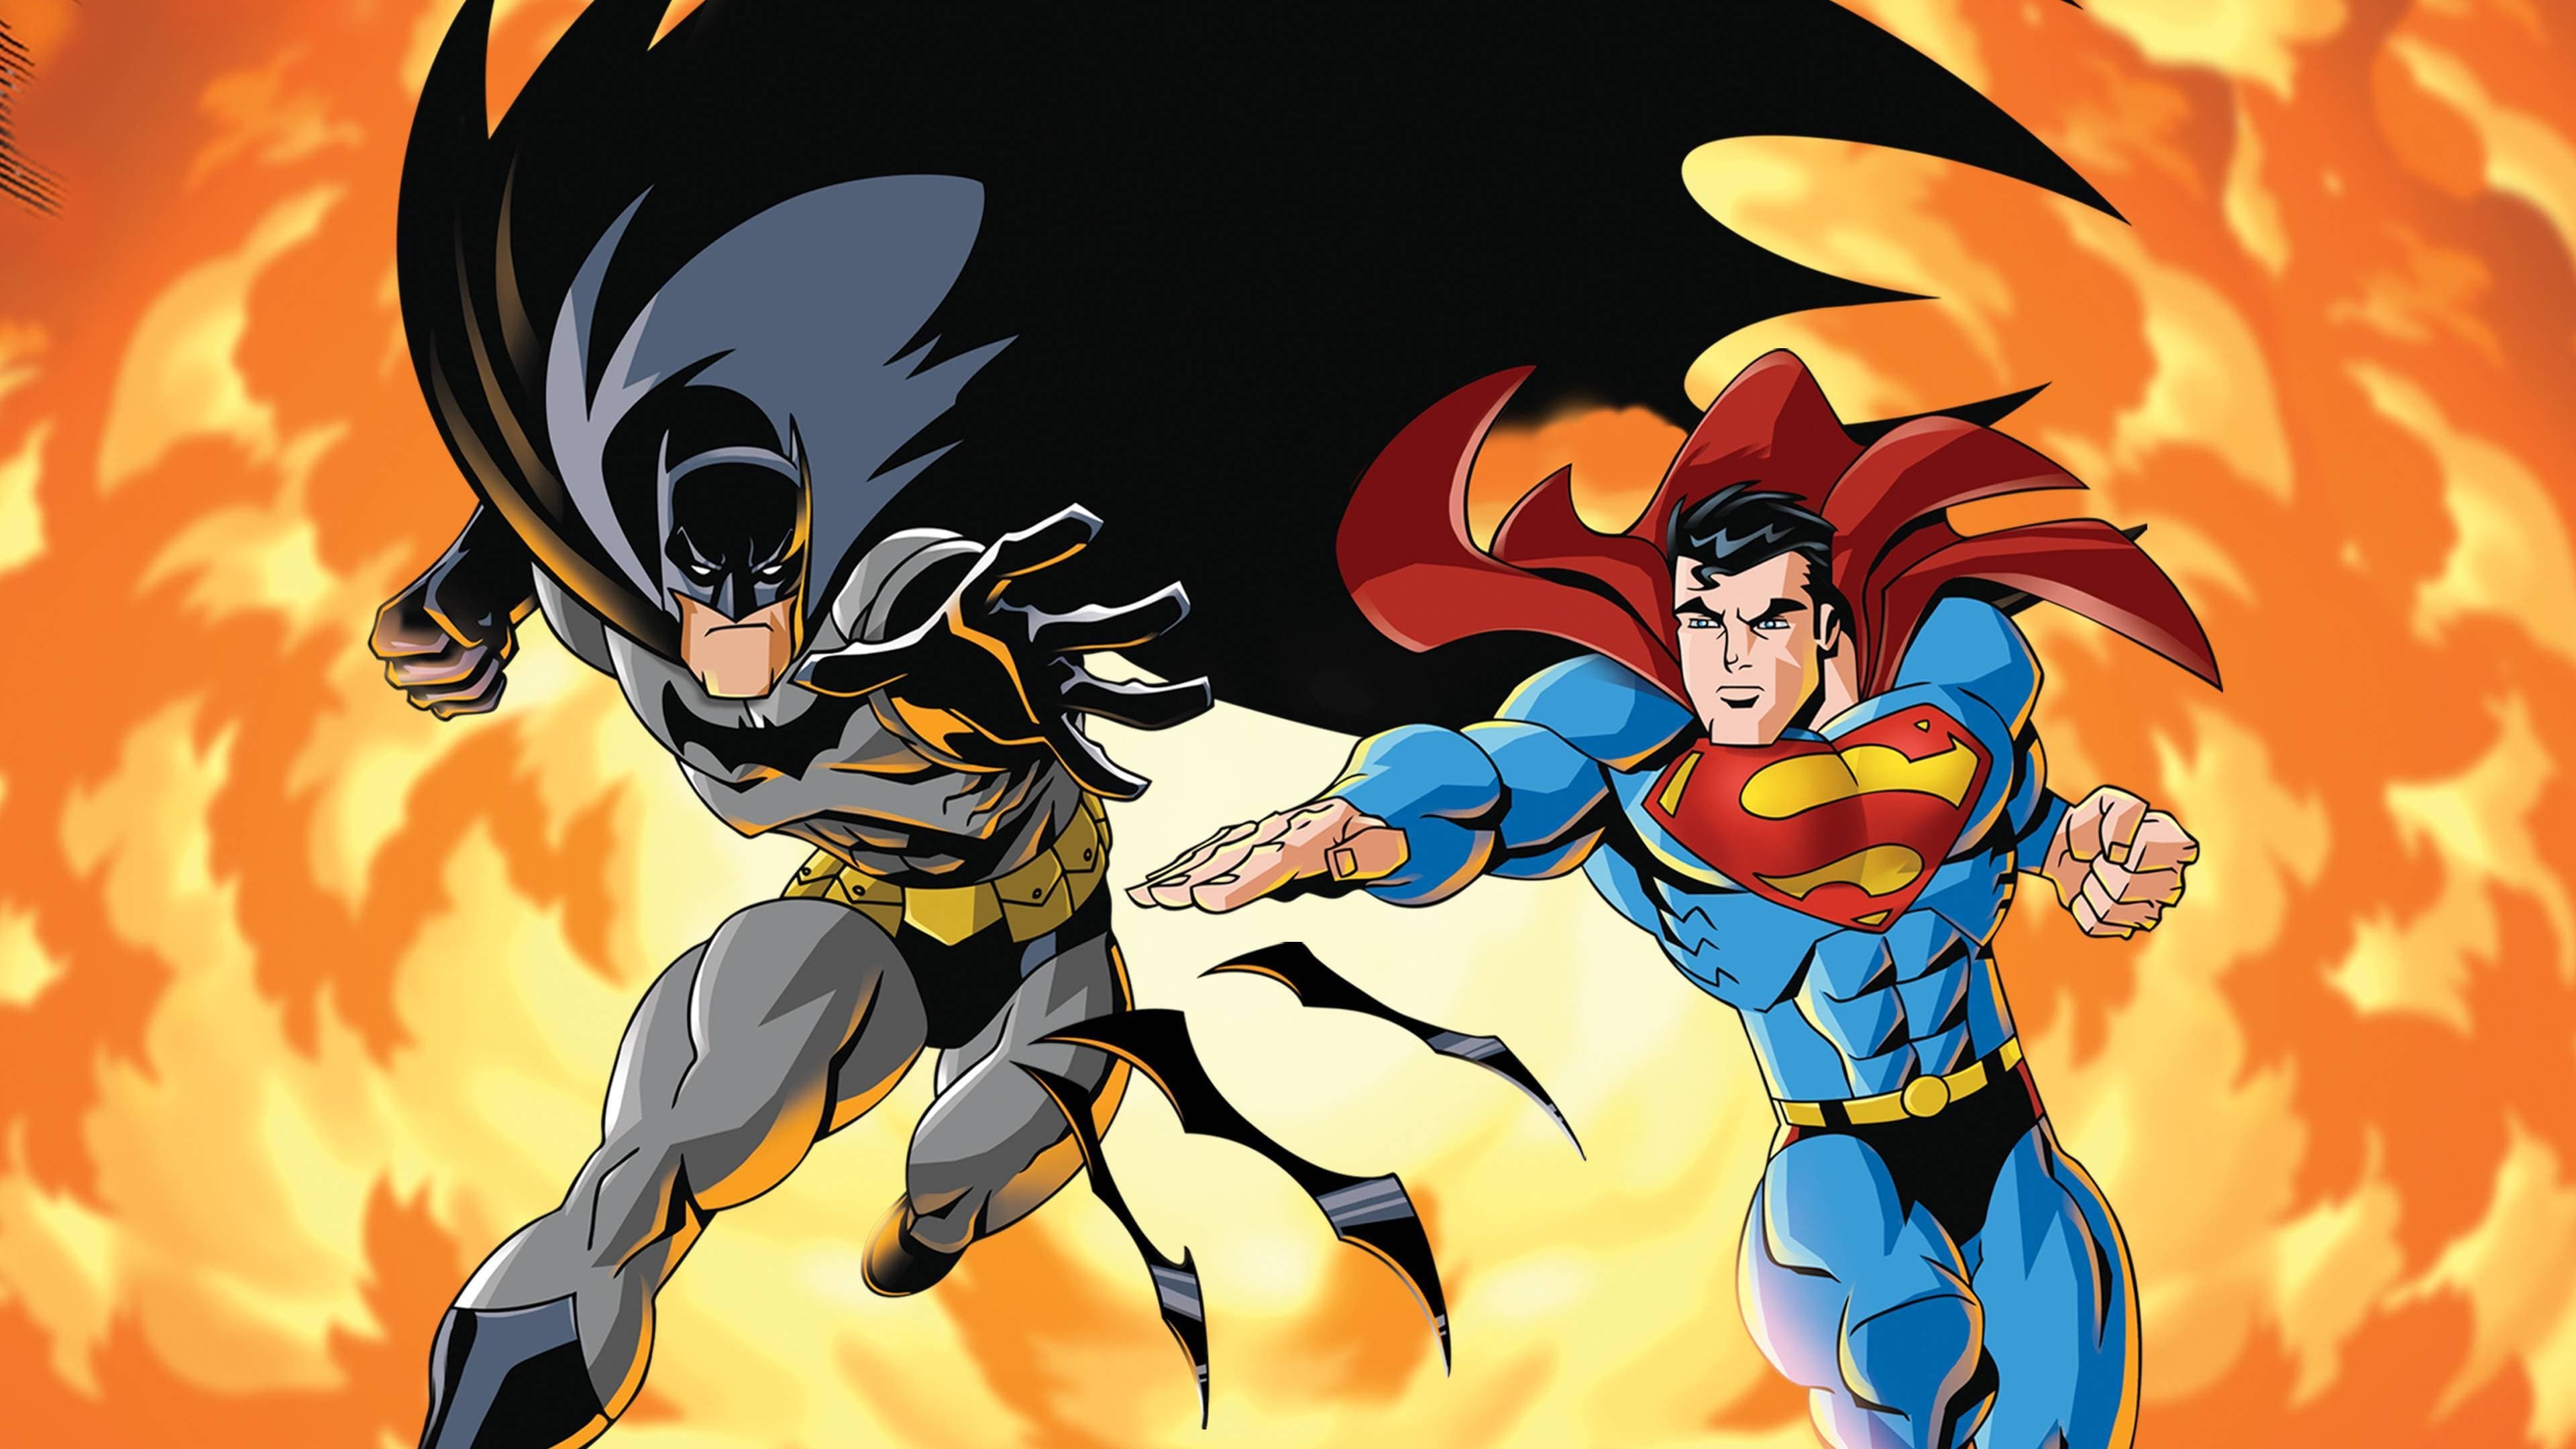 Super man batman public enemy - Superman/batman: public enemies